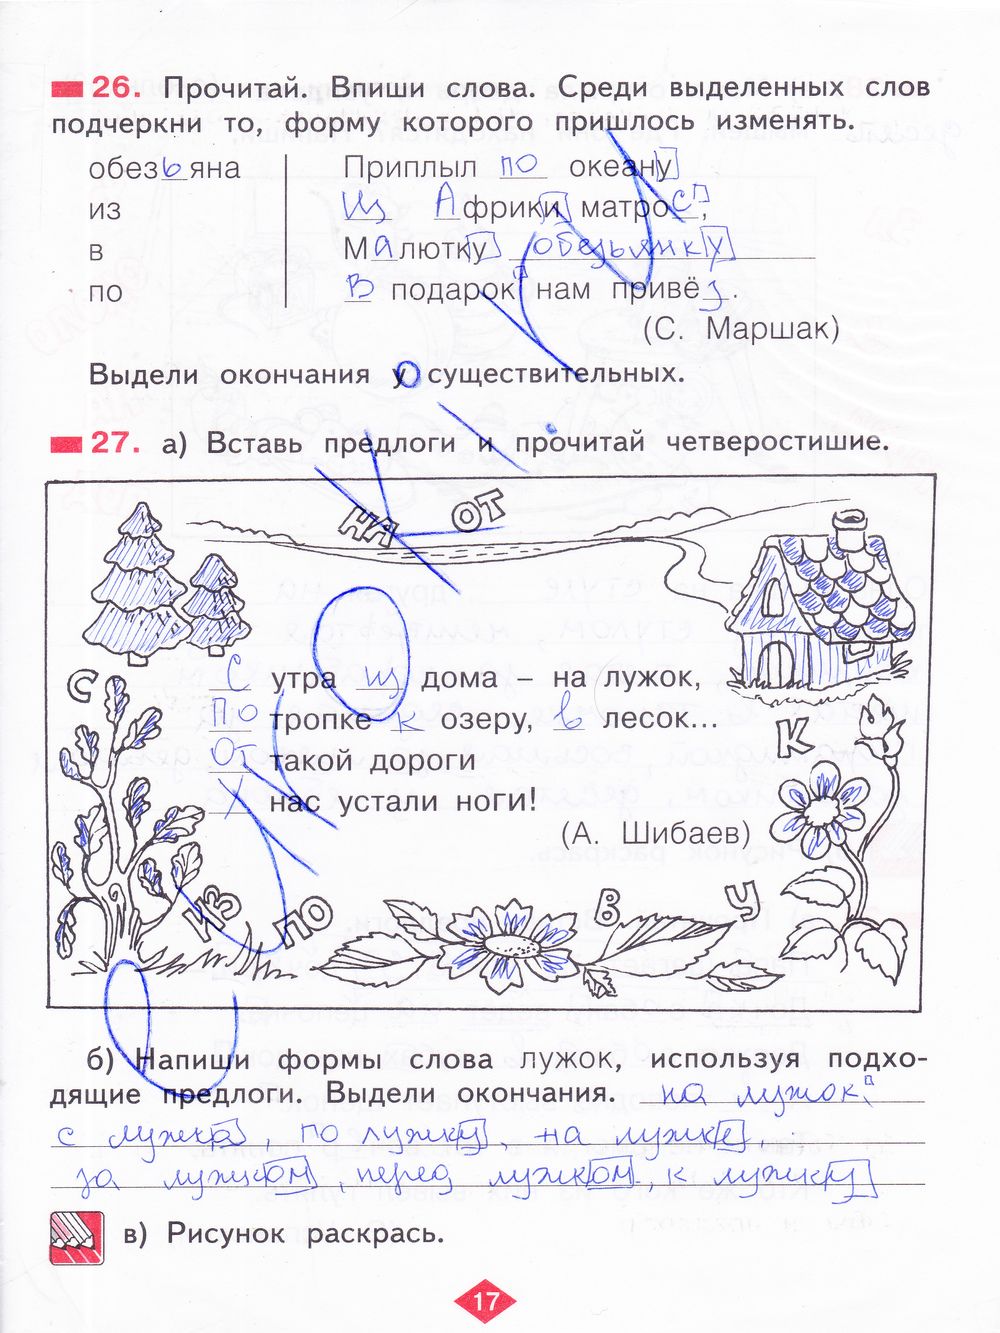 ГДЗ Русский язык 2 класс - стр. 17